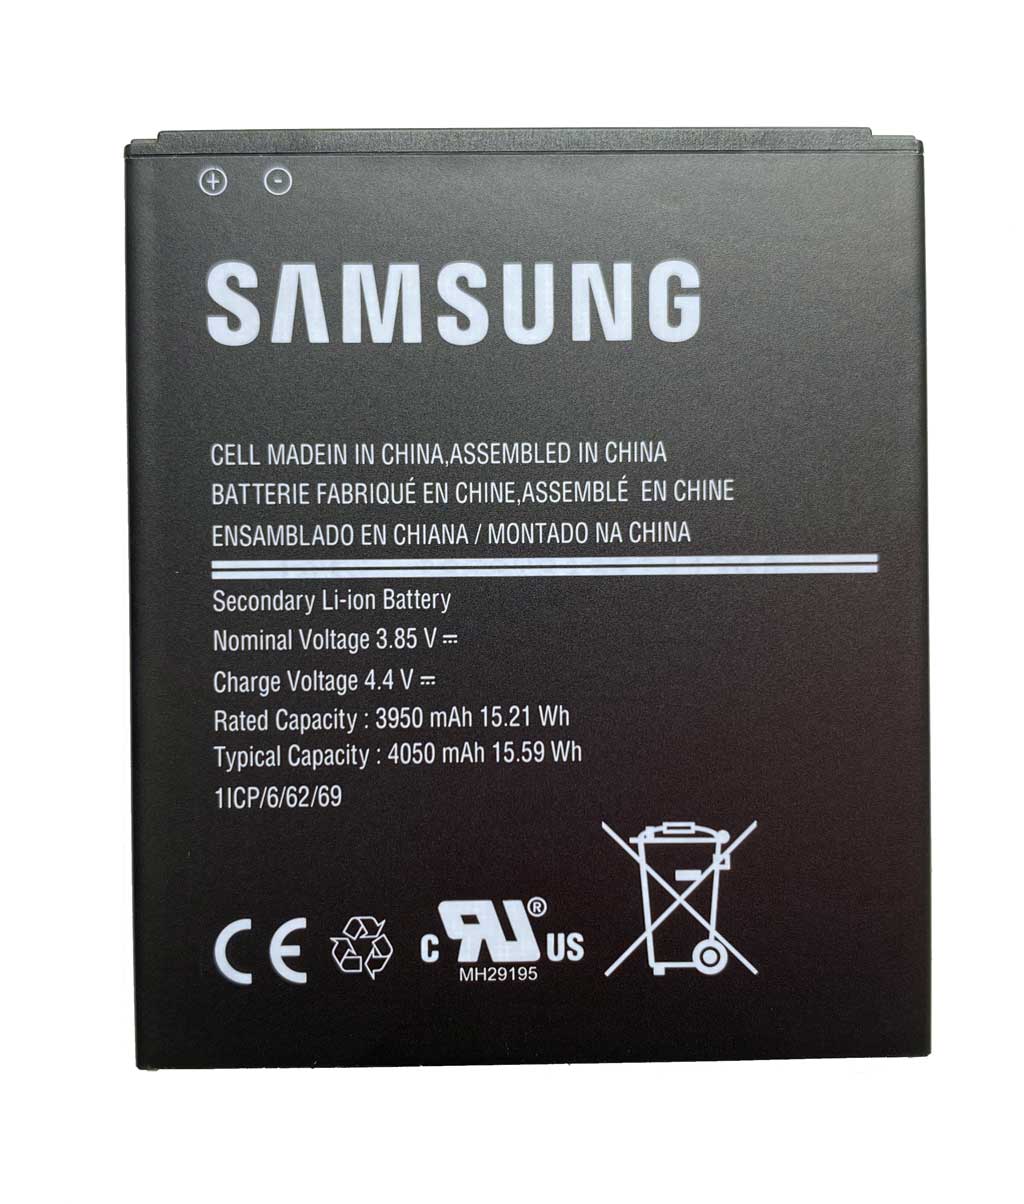 Original Samsung Akku für GALAXY XCOVER PRO 3950mAh EB-BG715BBE GH43-04993A